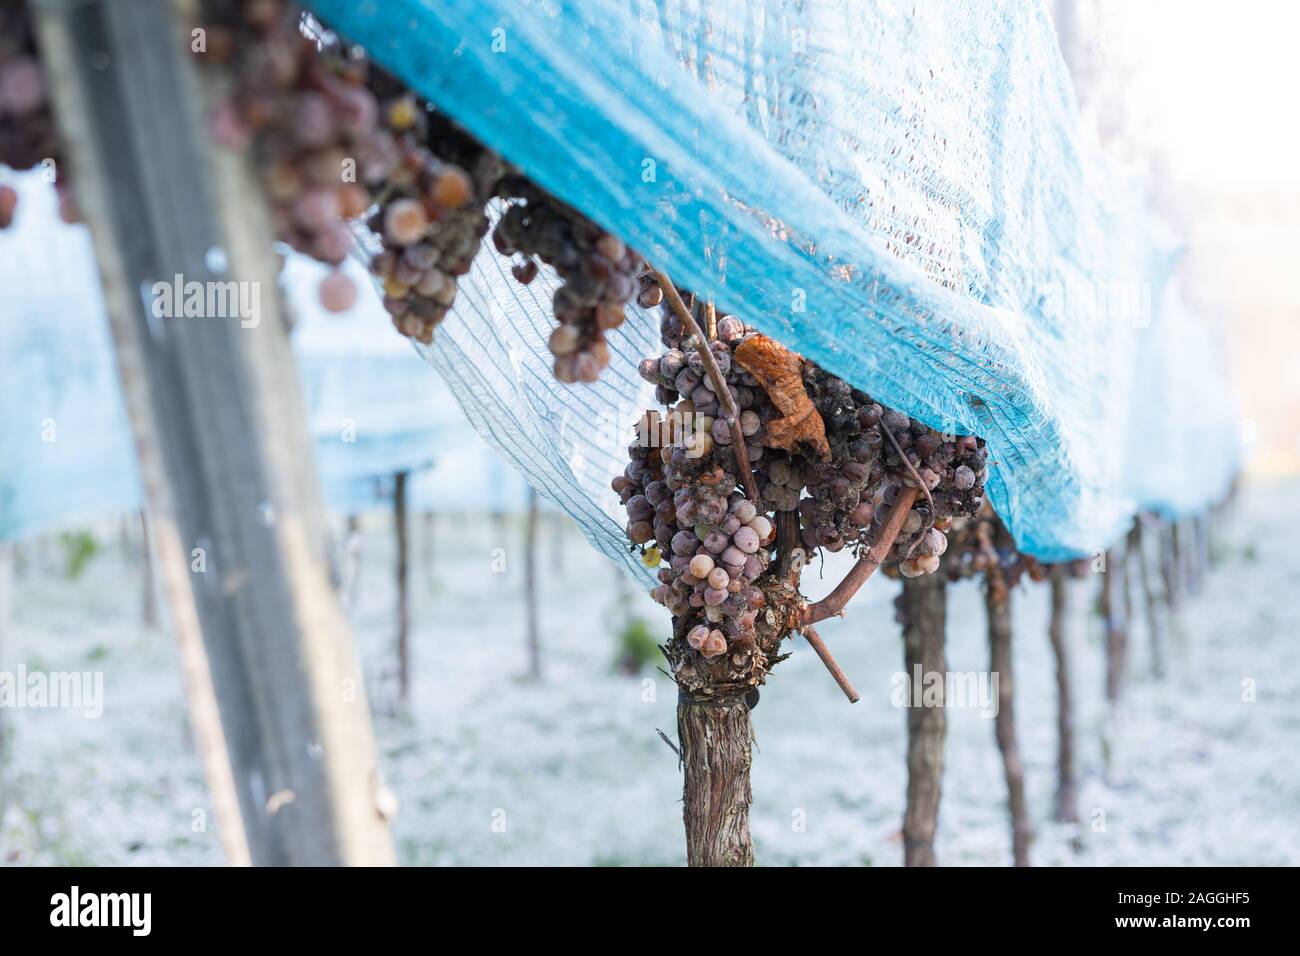 Ice Wine Grapes on vine Stock Photo